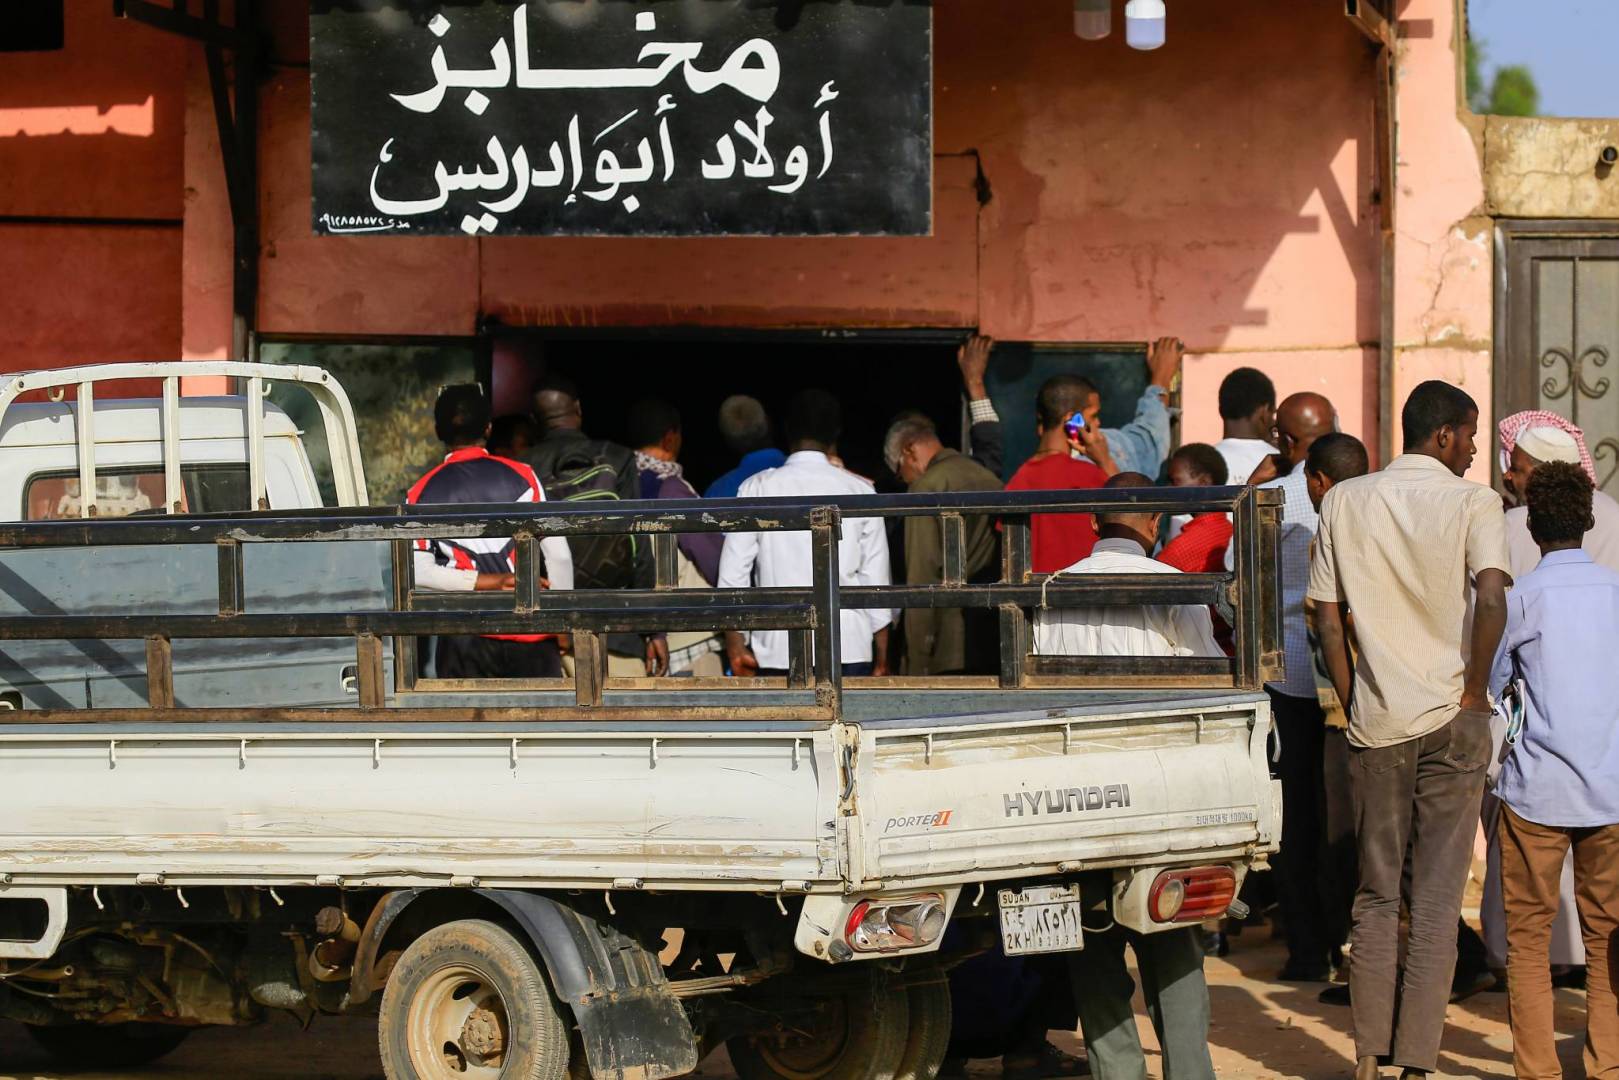 سودانيون يقفون خارج مخبز في الخرطوم لشراء الخبز